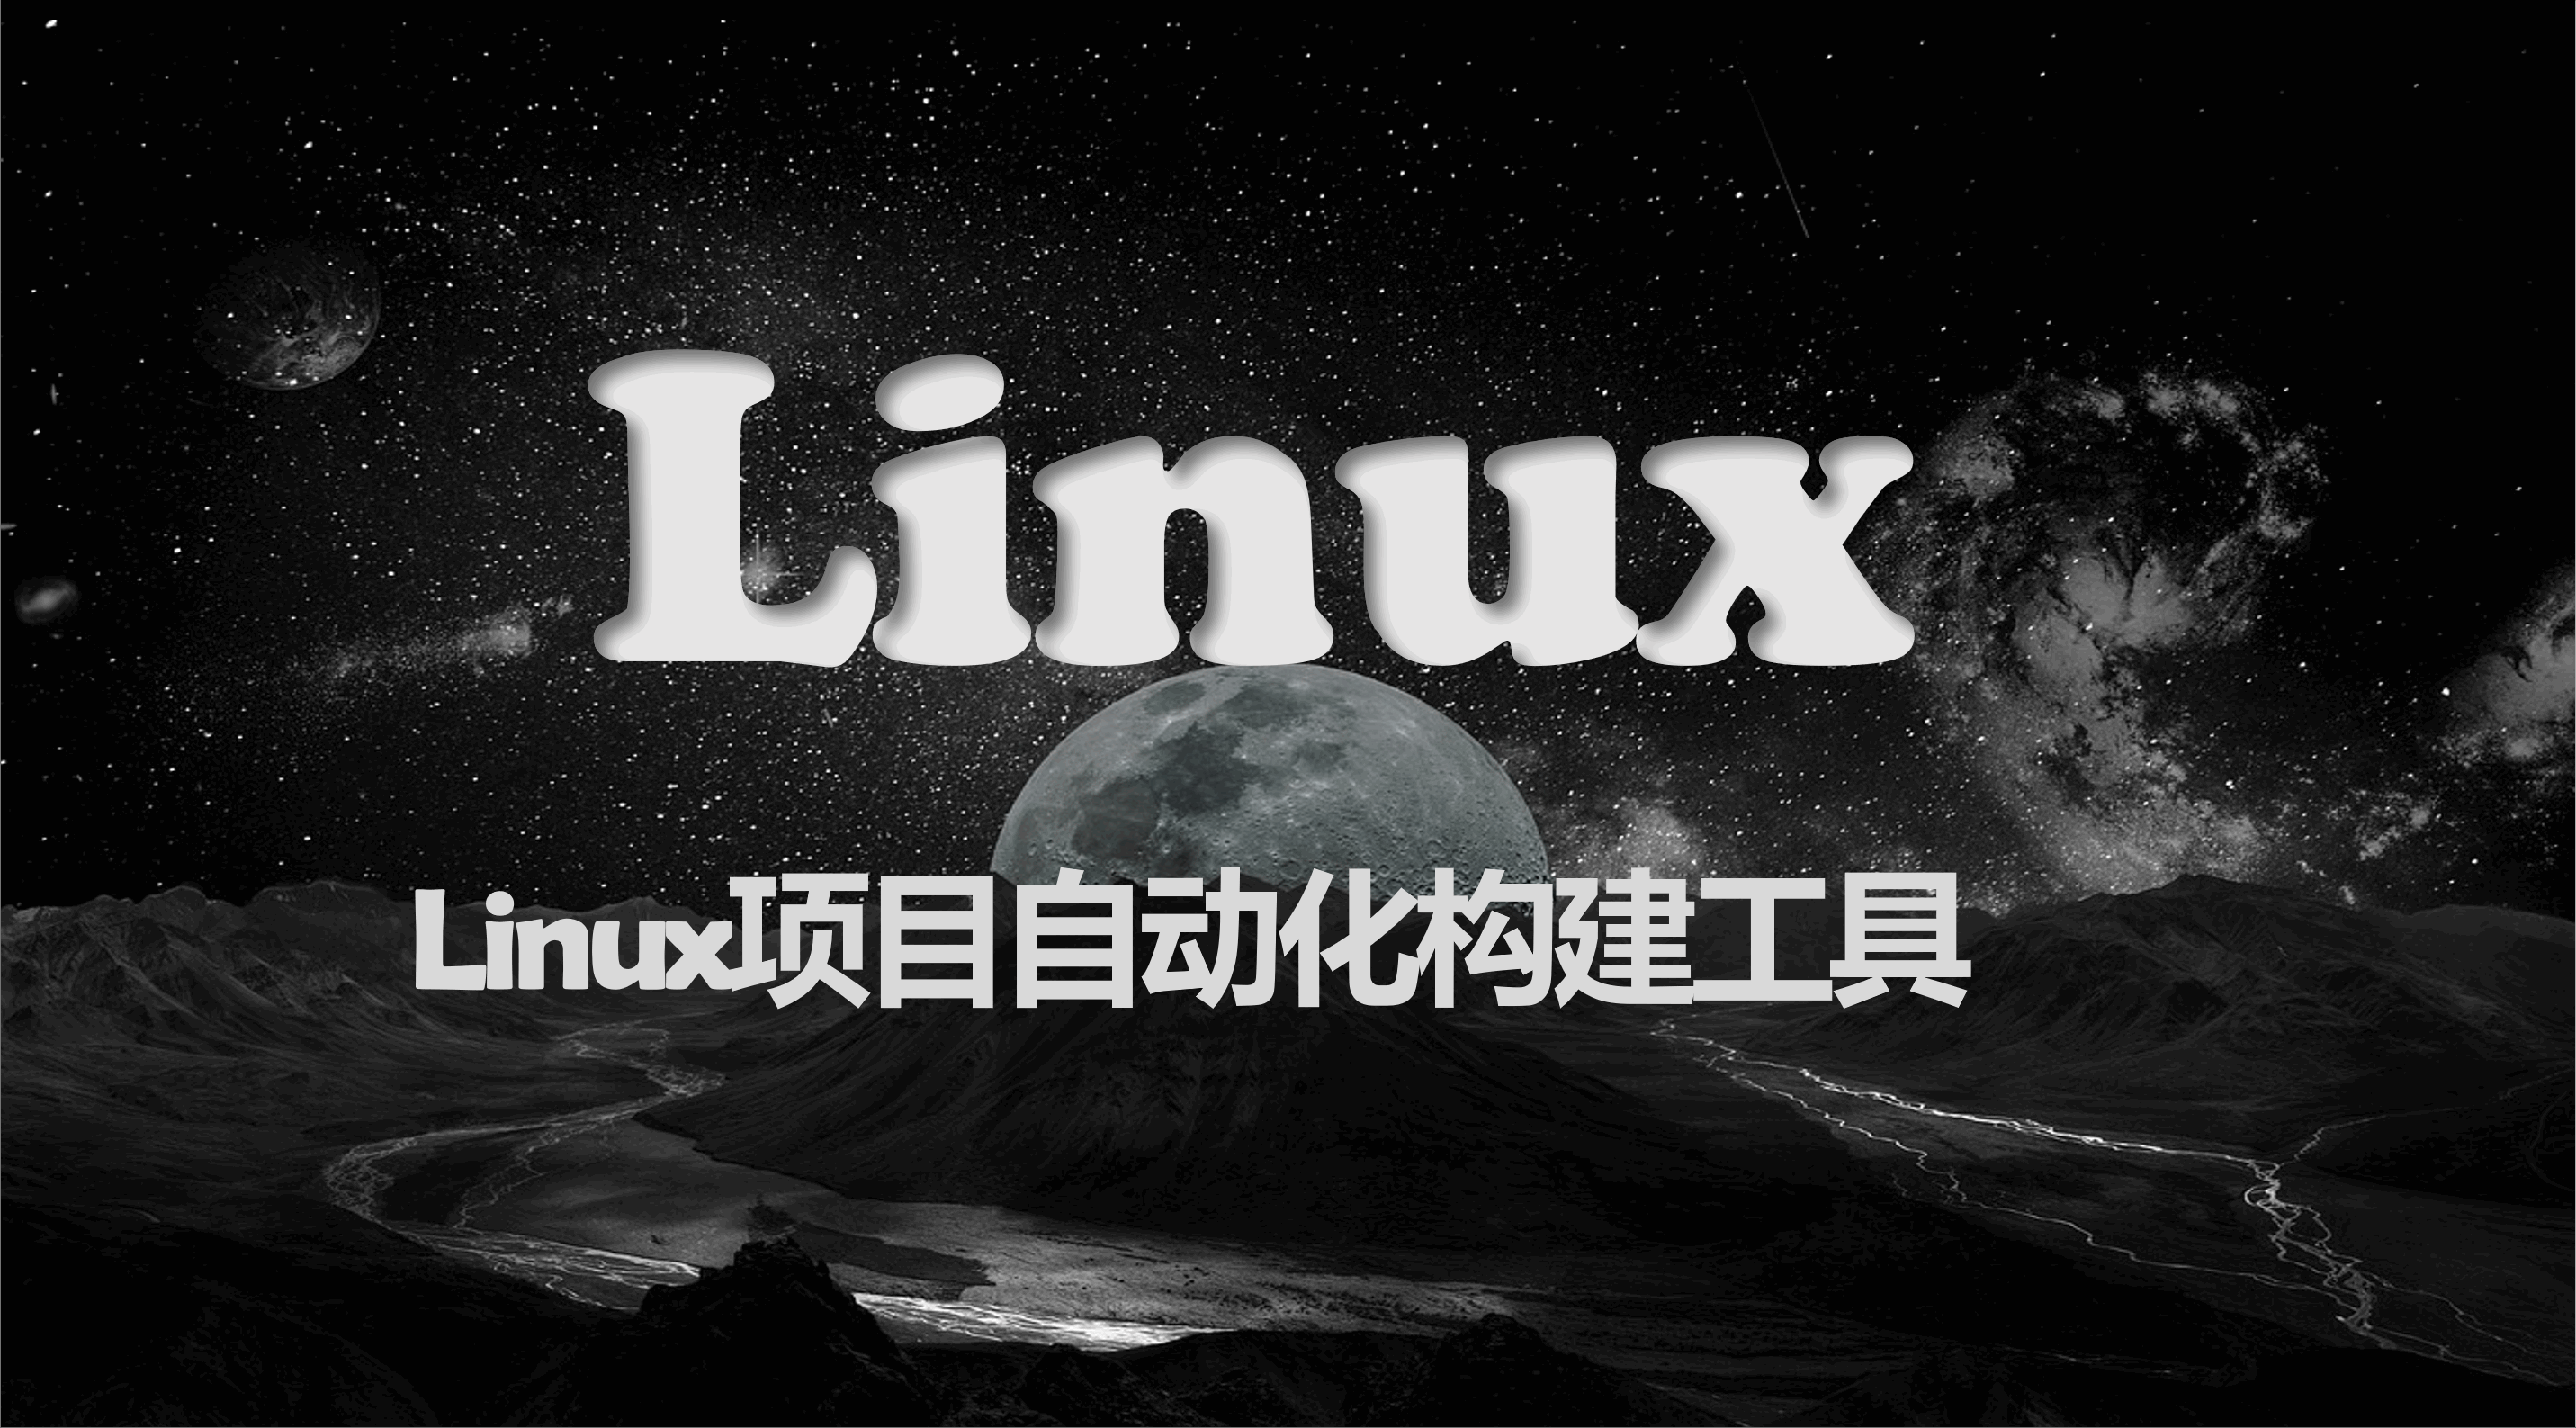 Linux项目自动化构建工具-make/ makefile及其应用：多文件编写第一个linux程序：进度条（懒人学习必备博文！！！）